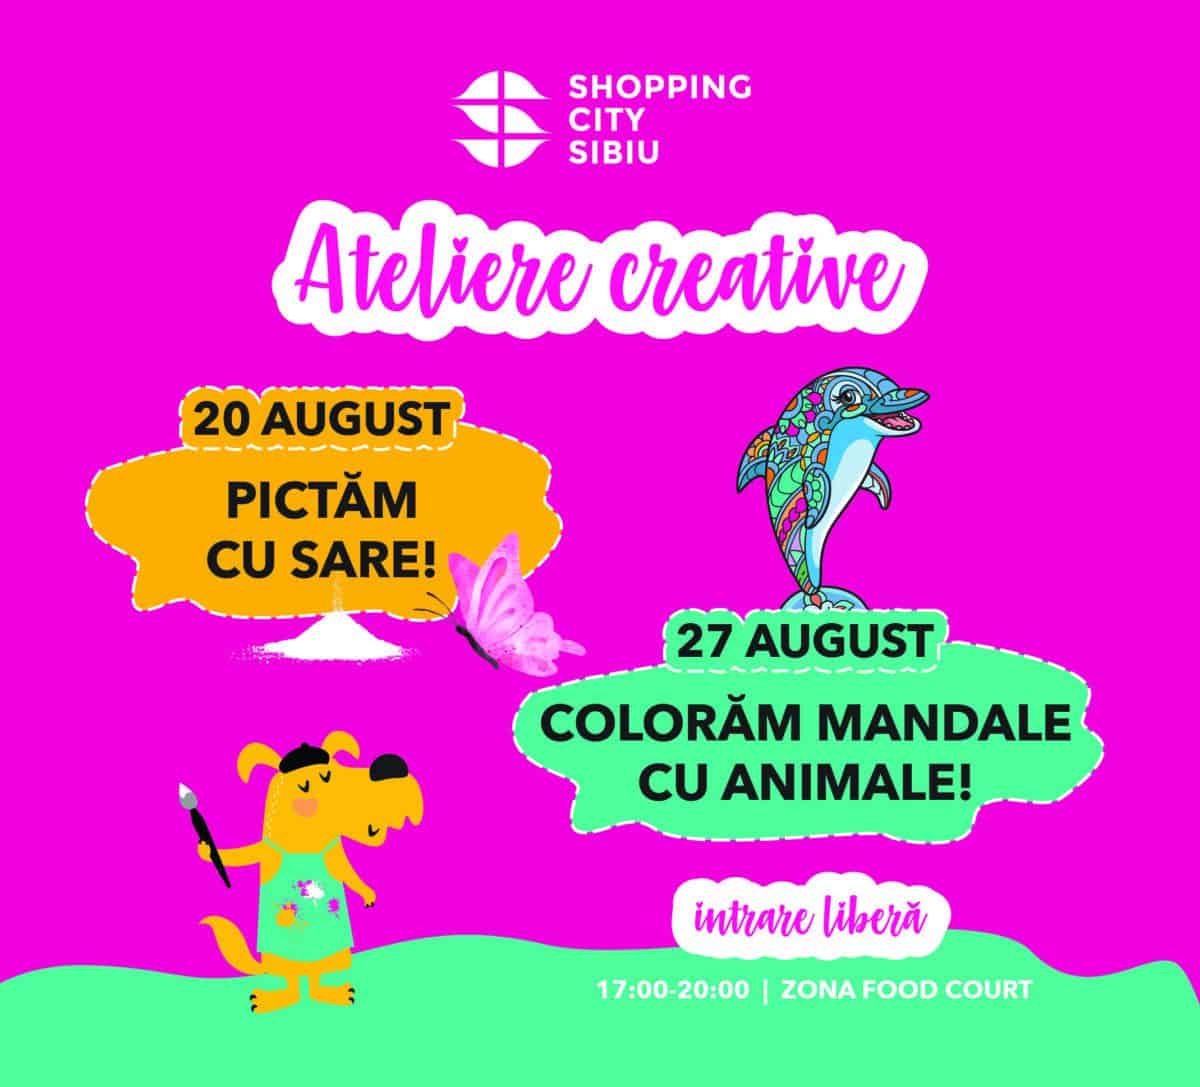 shopping city sibiu organizează ateliere creative pentru copii: pictură cu sare, mandale cu animale și creioane cu antene